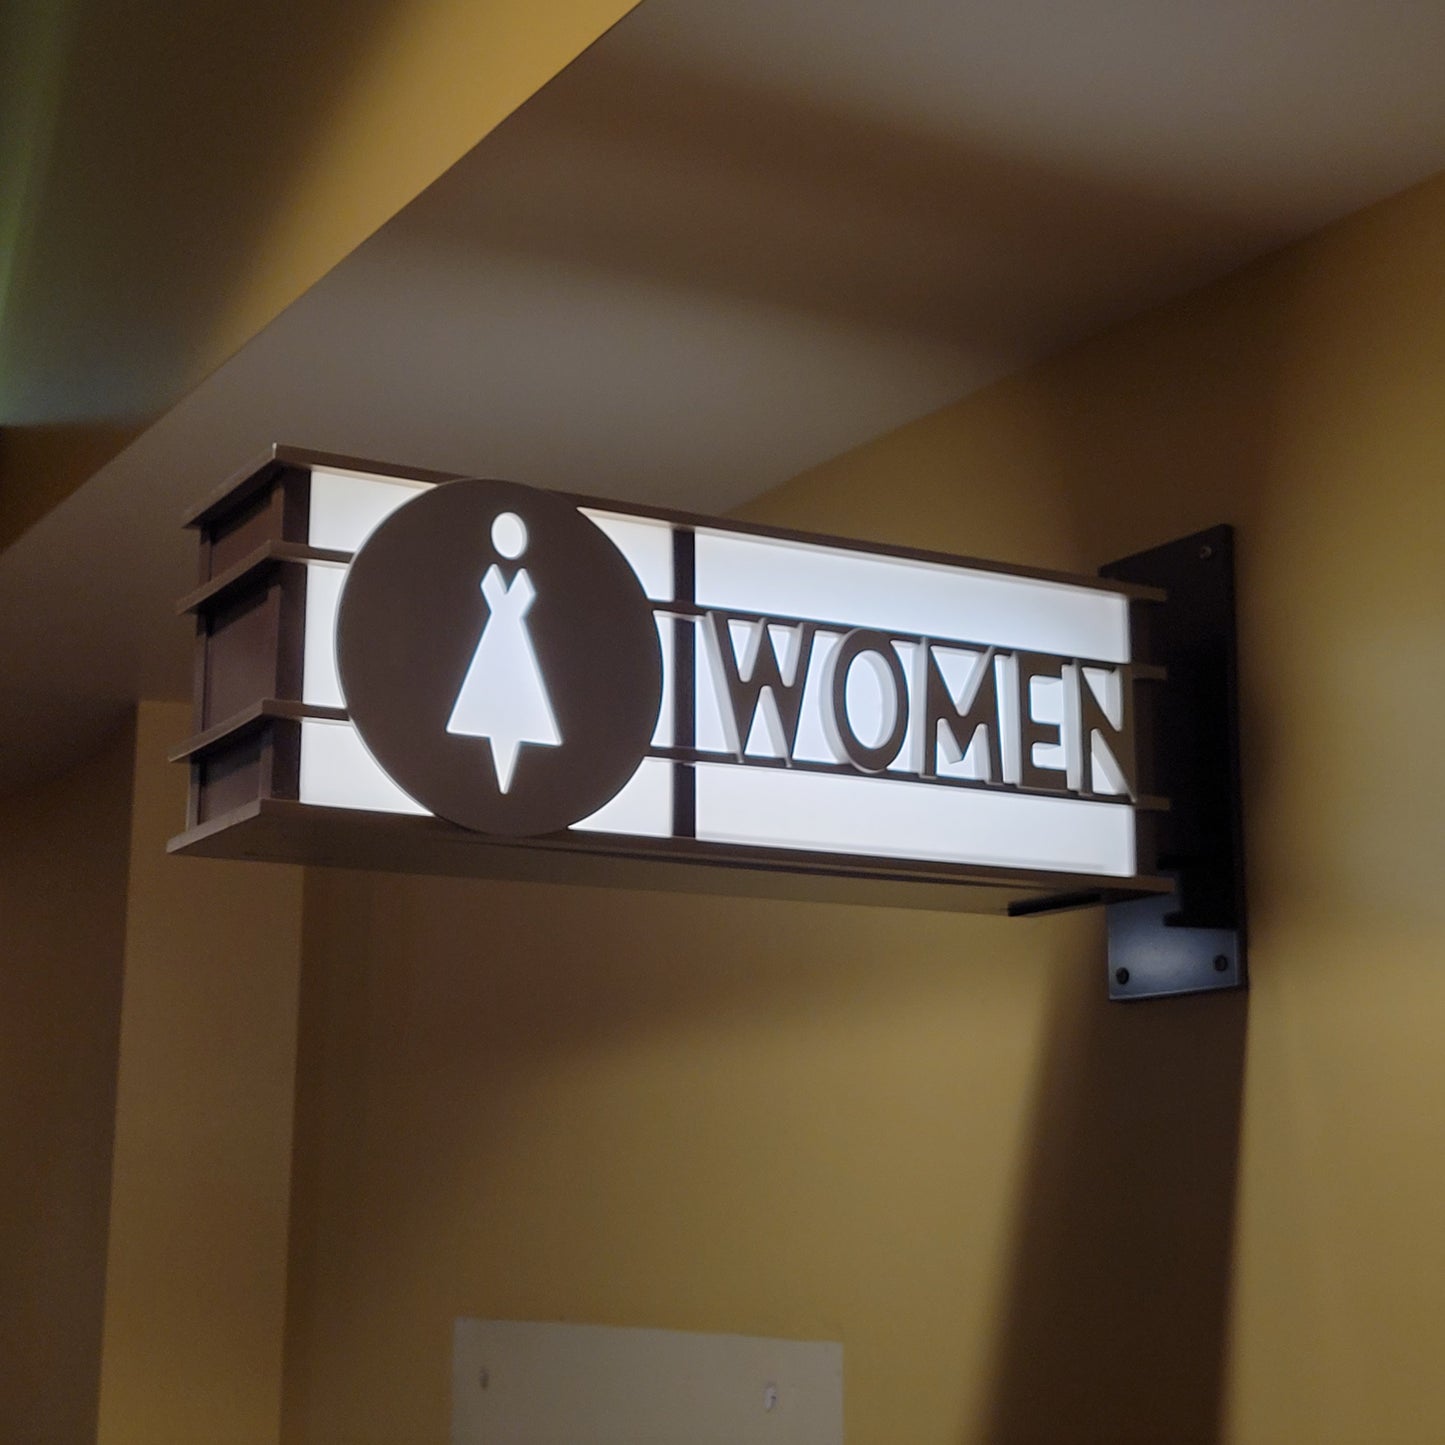 Illuminated AMC "Women" Sign